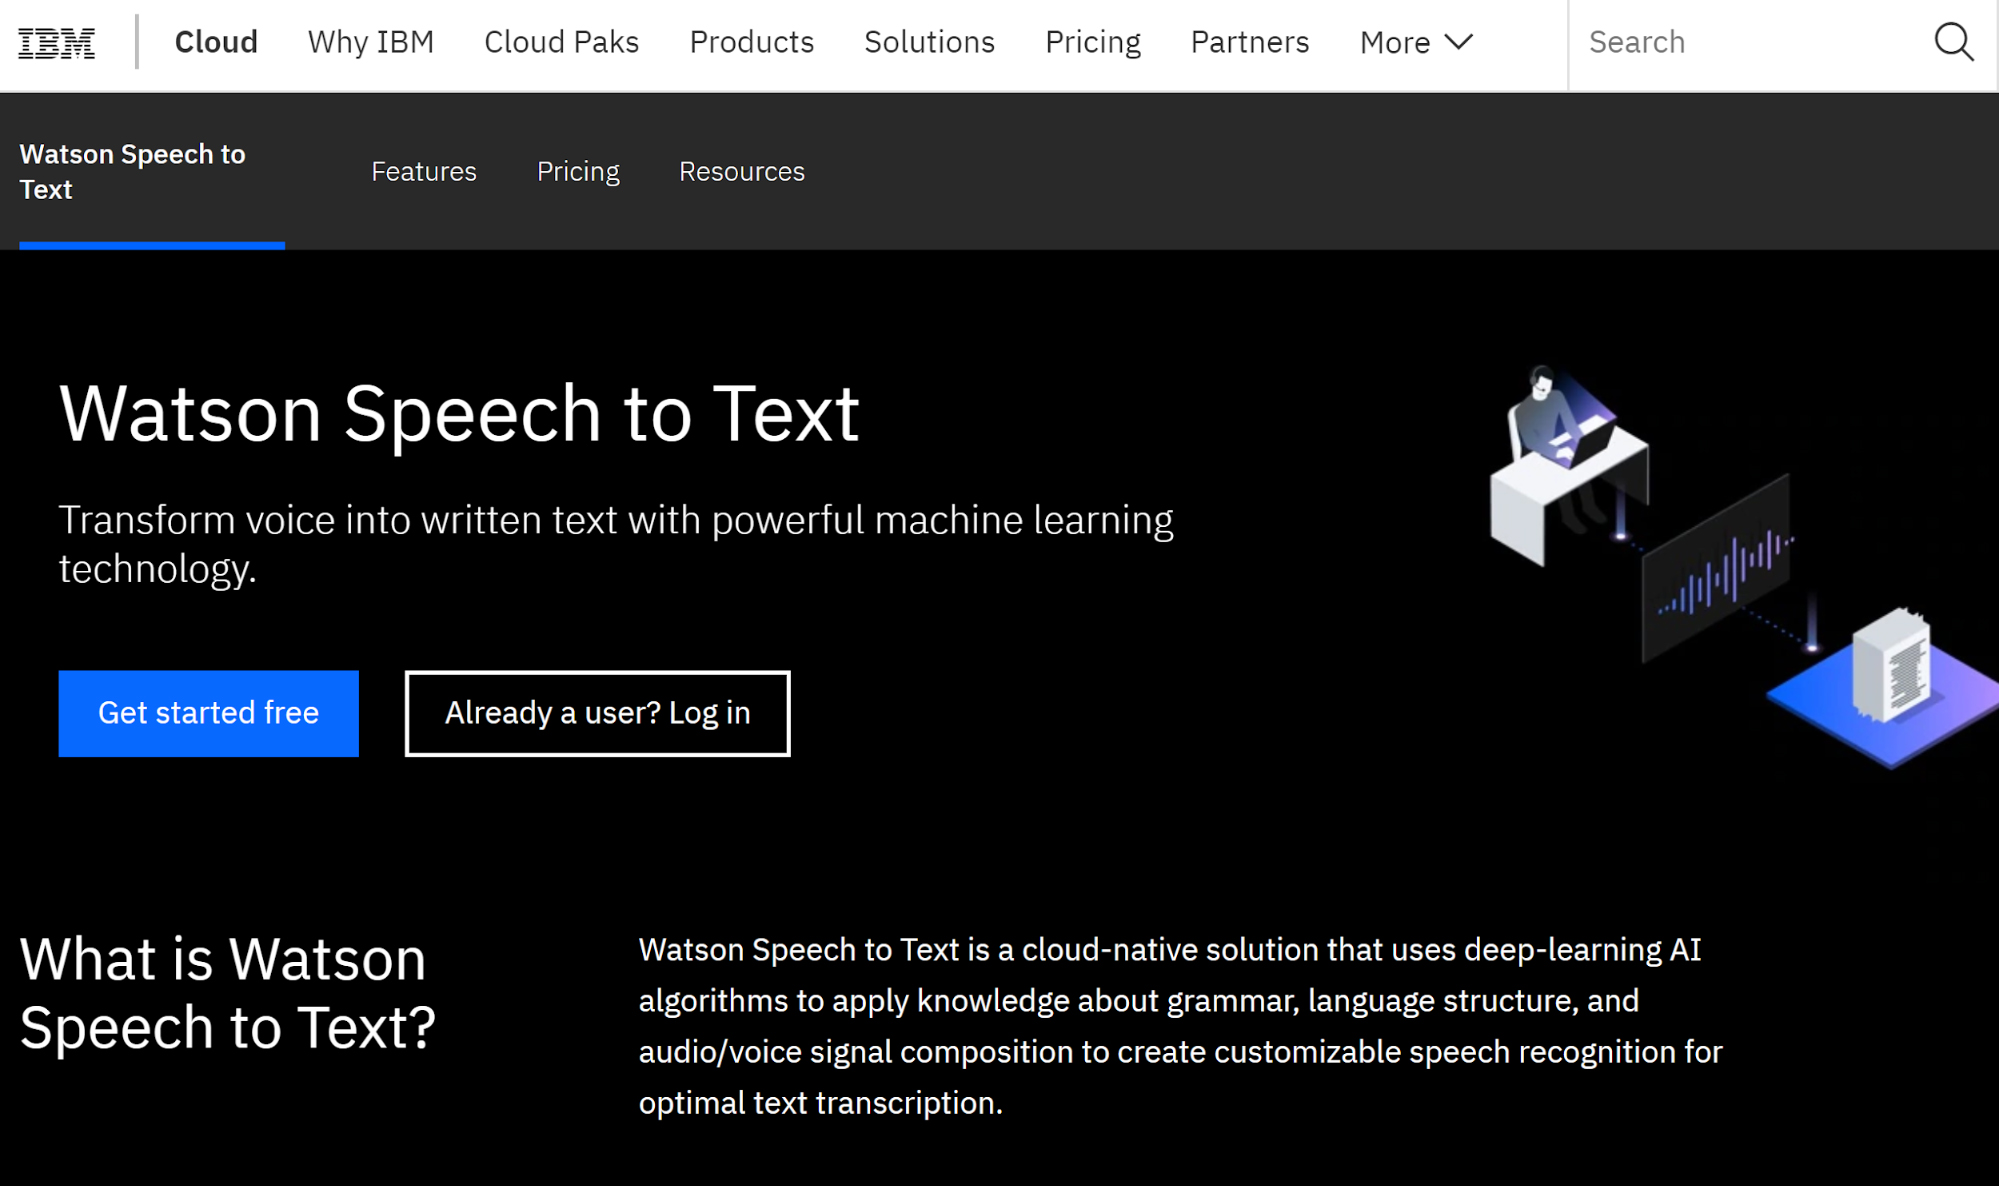 ibm watson speech to text offline